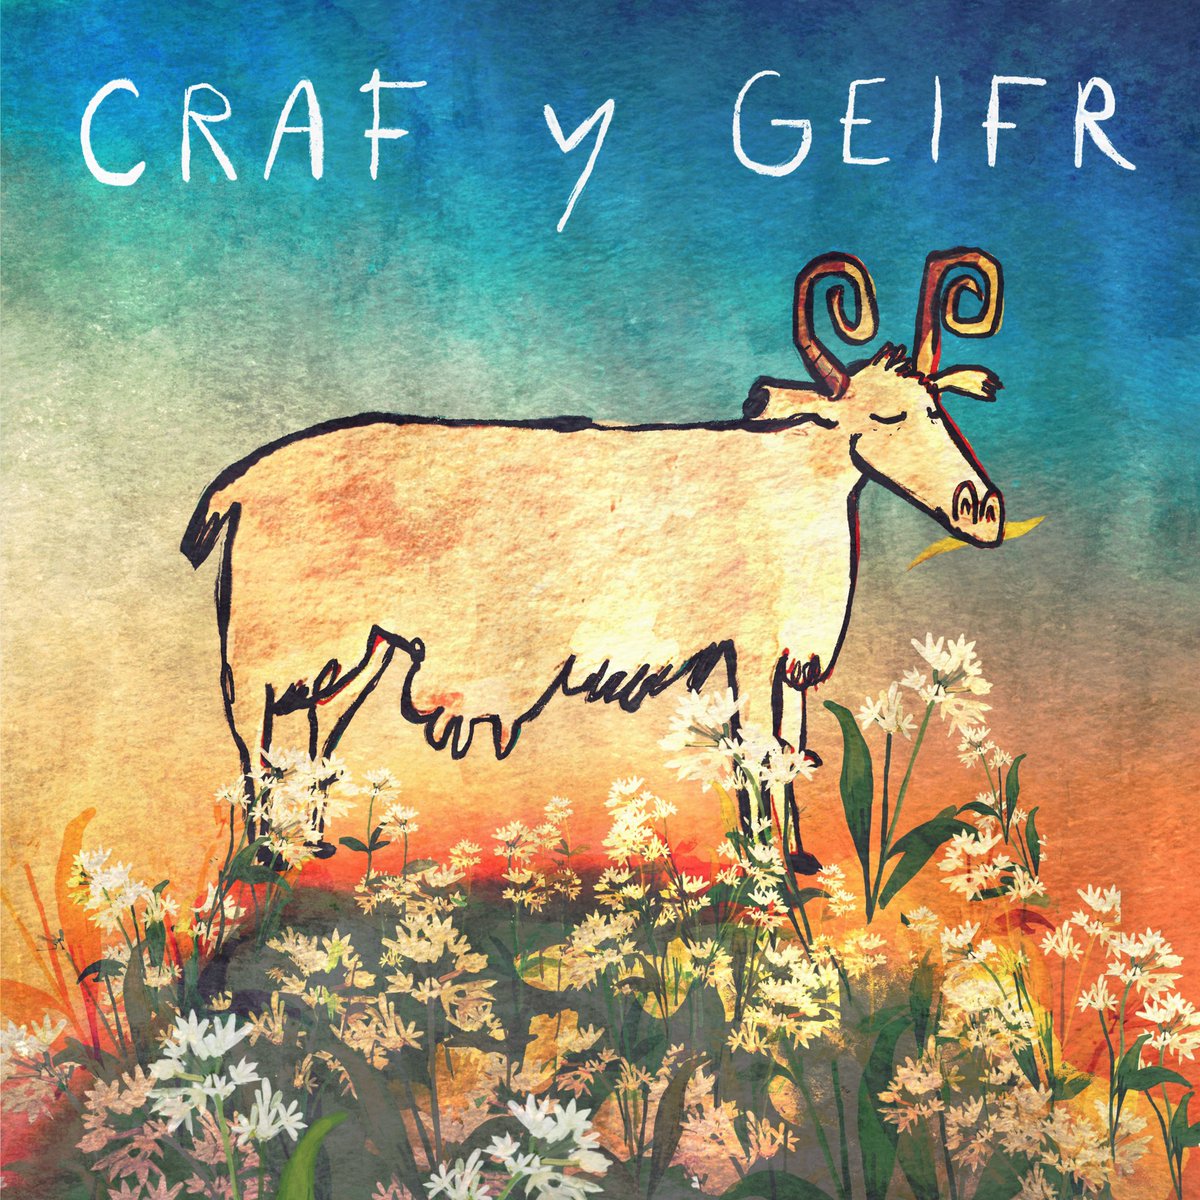 Craf y geifr: ramsons of the goats (wild garlic) Craf: ramsons (wild garlic) Gafr: goat Geifr: goats #dysgucymraeg